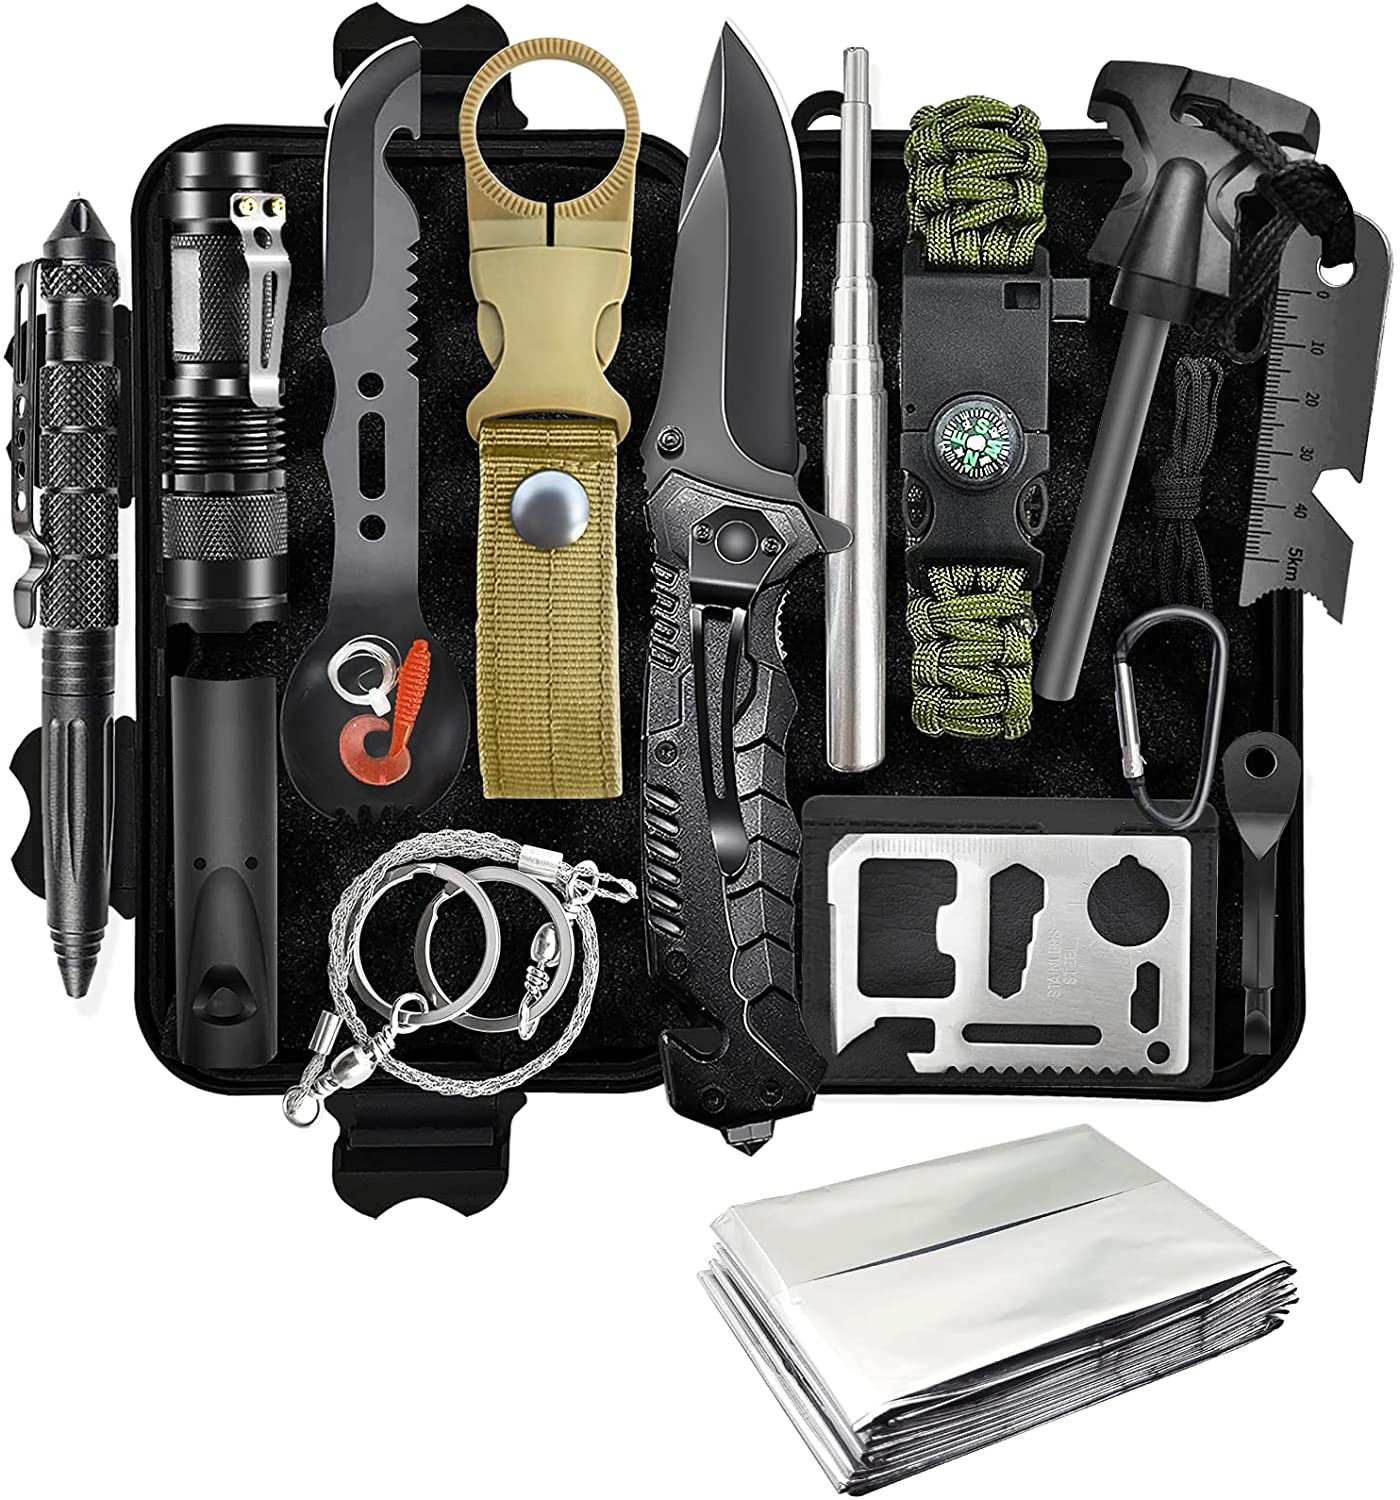 Survival Kit 13 in 1, Professionelles Notfall Survival Kit mit Klappmesser, Taschenlampe, Survival Ausrüstung für Outdoor Camping, Abenteuer, Wandern, Jagen, Angeln, Männer, Väter